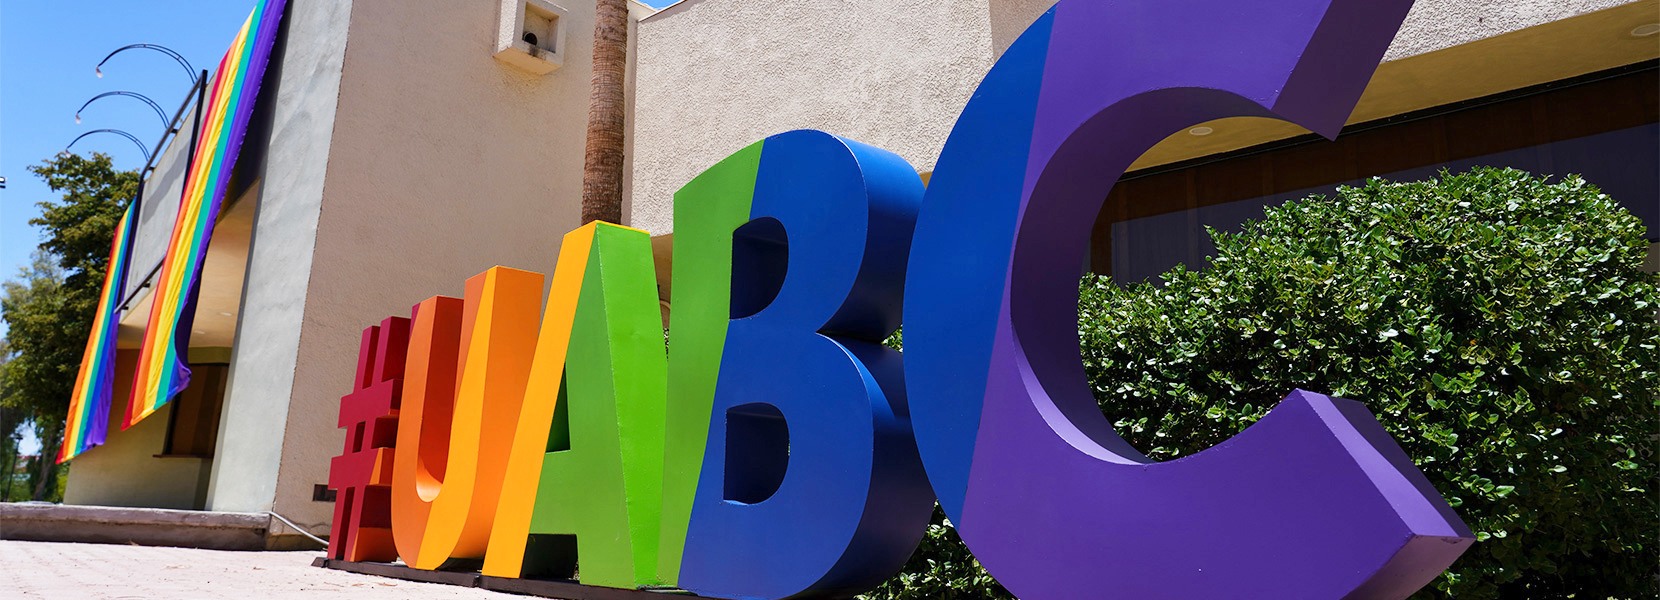 ▲멕시코 바하칼리포르니아자치대학교(UABC)의 교정에는 LGBT를 상징하는 무지개기와 이와 동일한 색상의 대학 로고가 설치돼 있다.   ⓒ바하칼리포르니아자치대학교 웹사이트